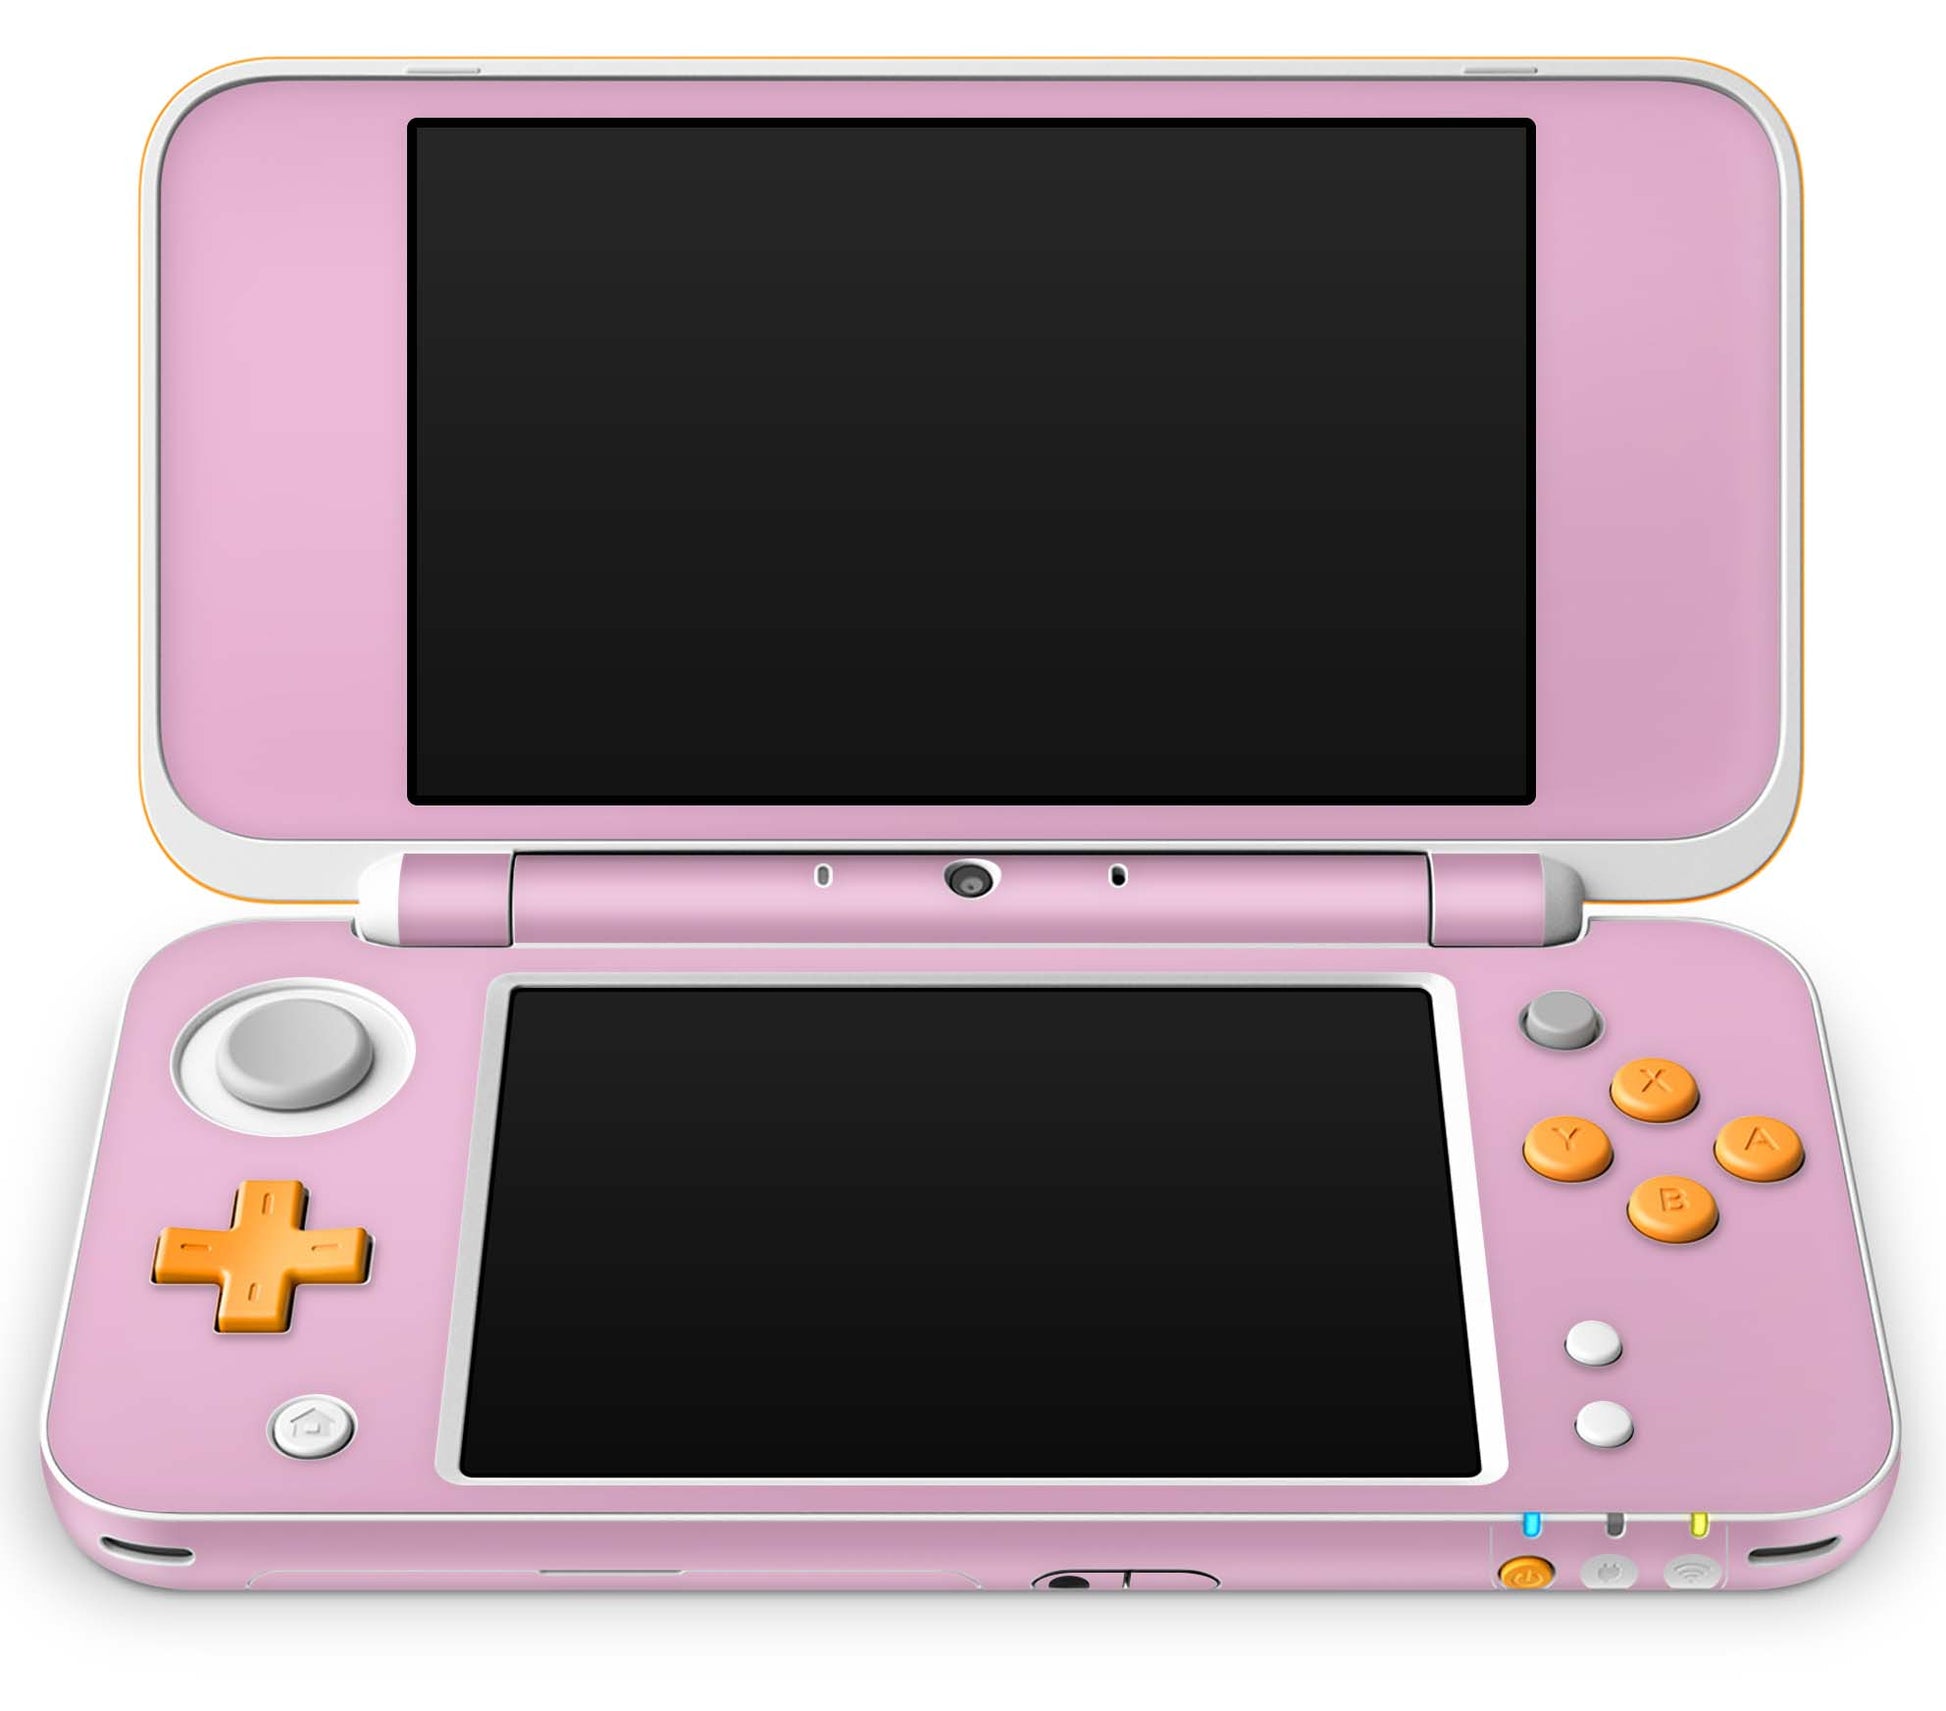 New Nintendo 2DS XL Skin Design Schutzfolie Aufkleber Folie Solid state pink Aufkleber Skins4u   